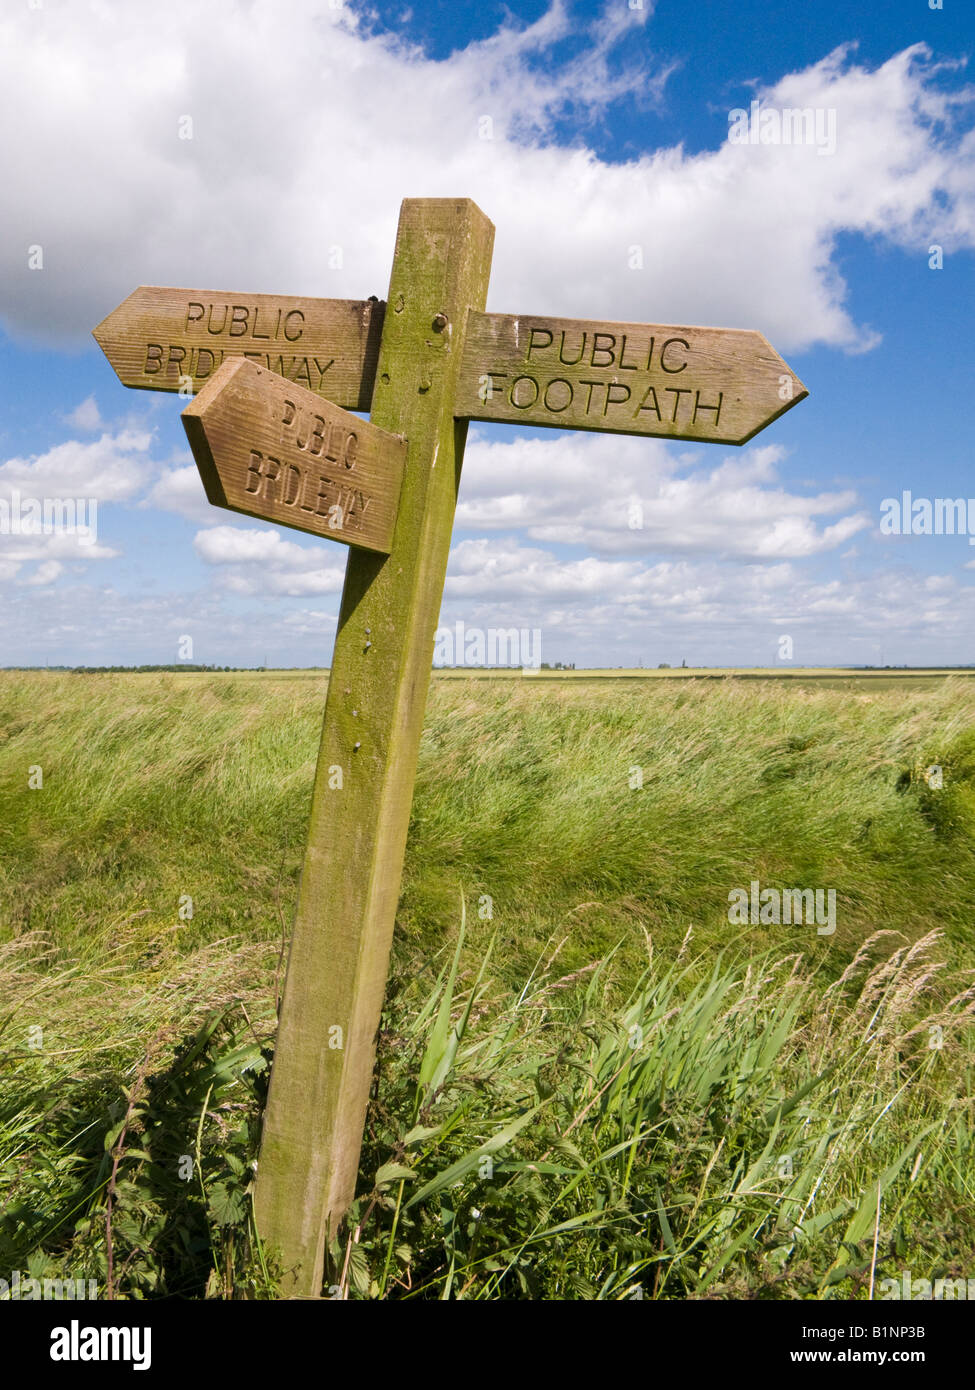 Holz- Fußweg Richtung Schild zeigt öffentliche Wanderwege und Reitwege in den Sumpfgebieten, East Yorkshire, England, Großbritannien Stockfoto